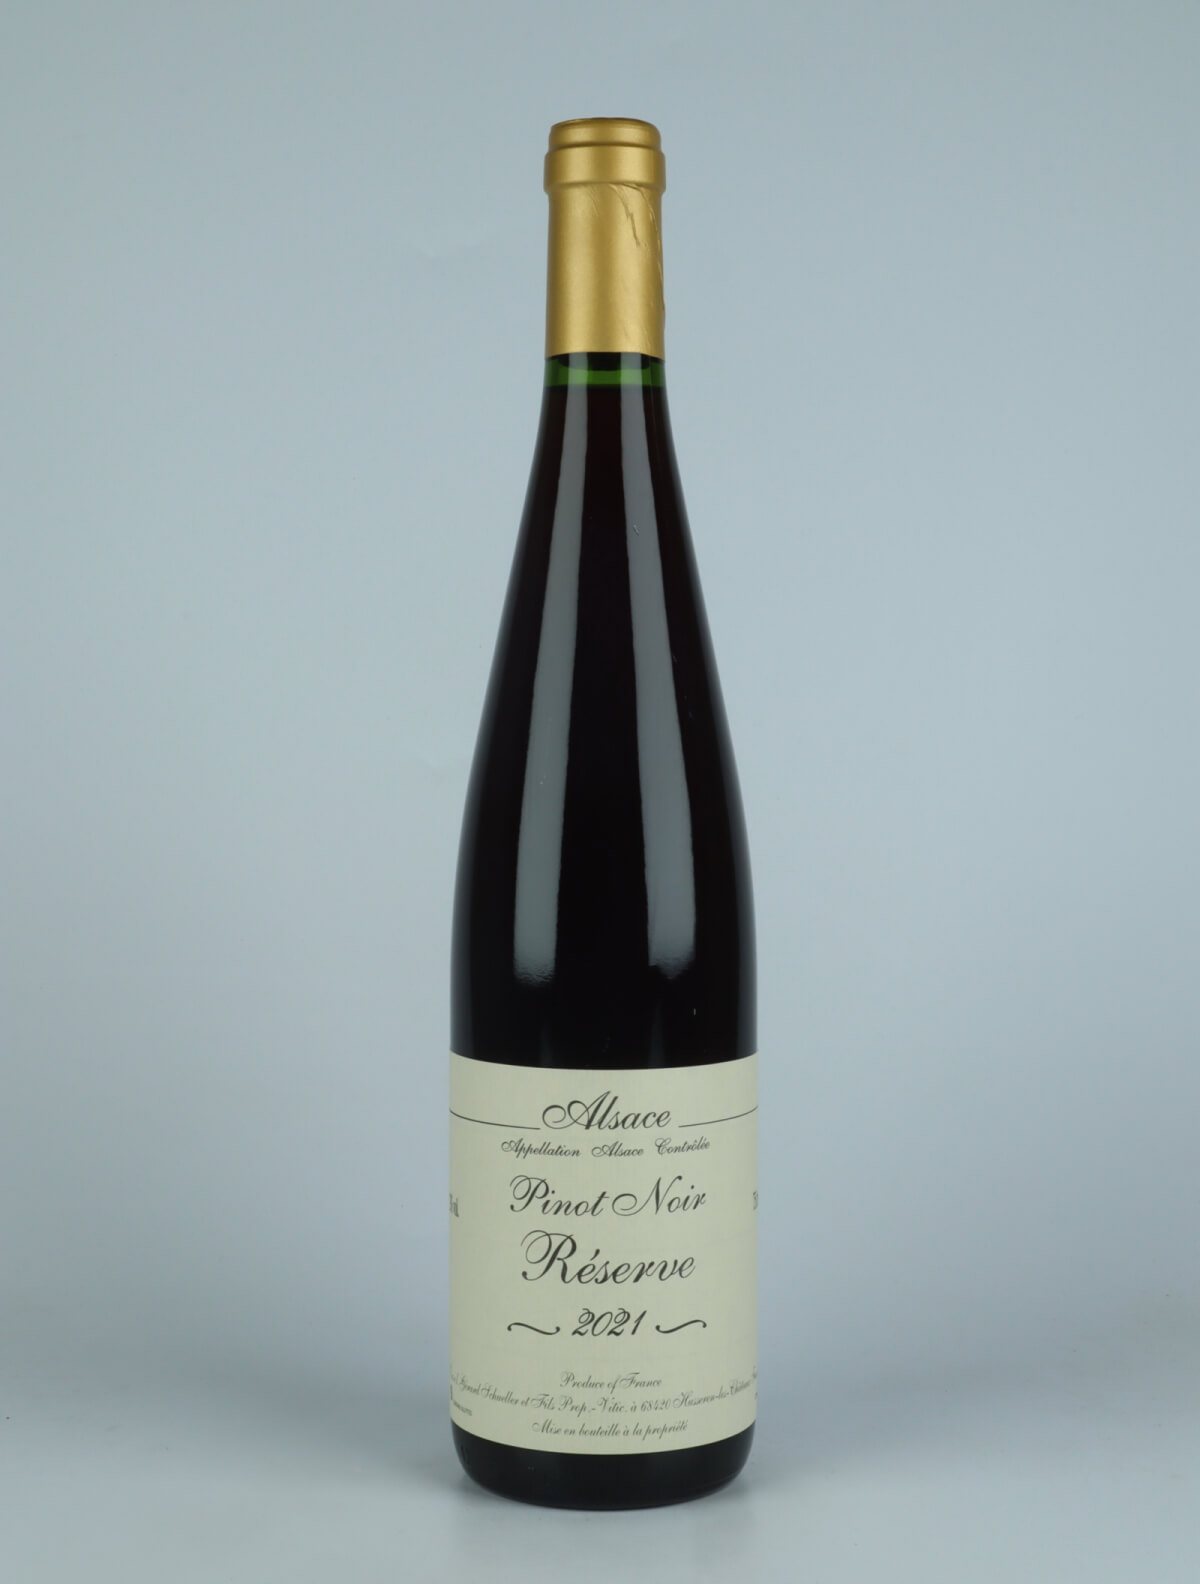 En flaske 2021 Pinot Noir - Réserve Rødvin fra Gérard Schueller, Alsace i Frankrig